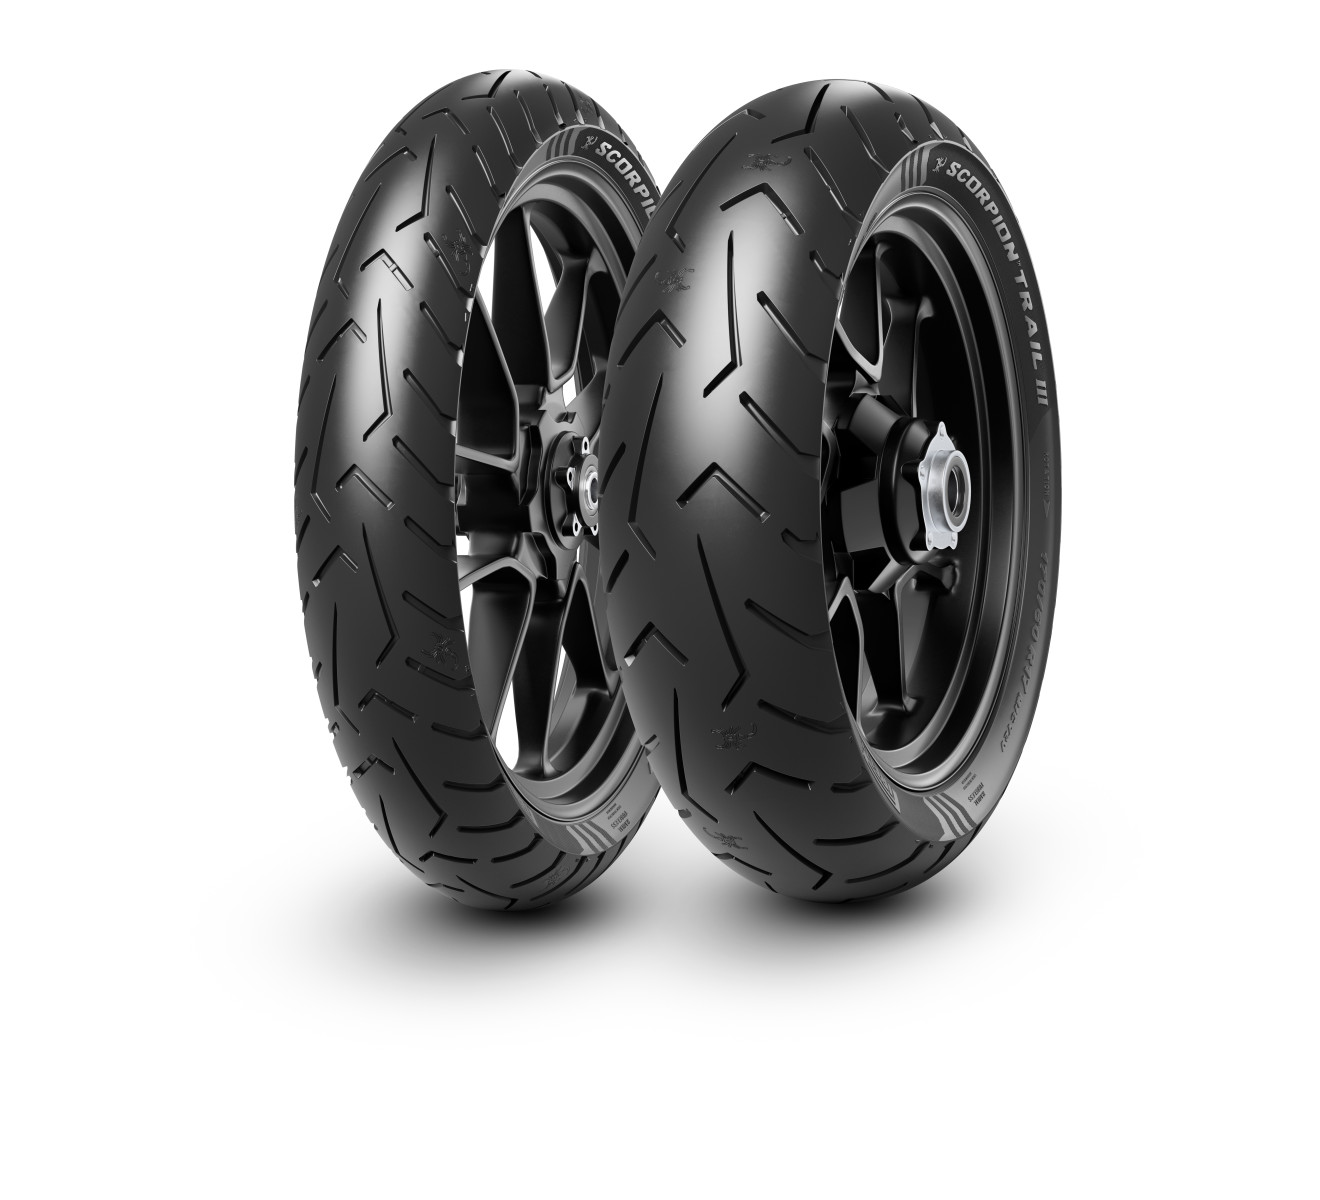 Gomme Nuove Pirelli 130/80 R17 65V SCORPION TRAIL III pneumatici nuovi Estivo